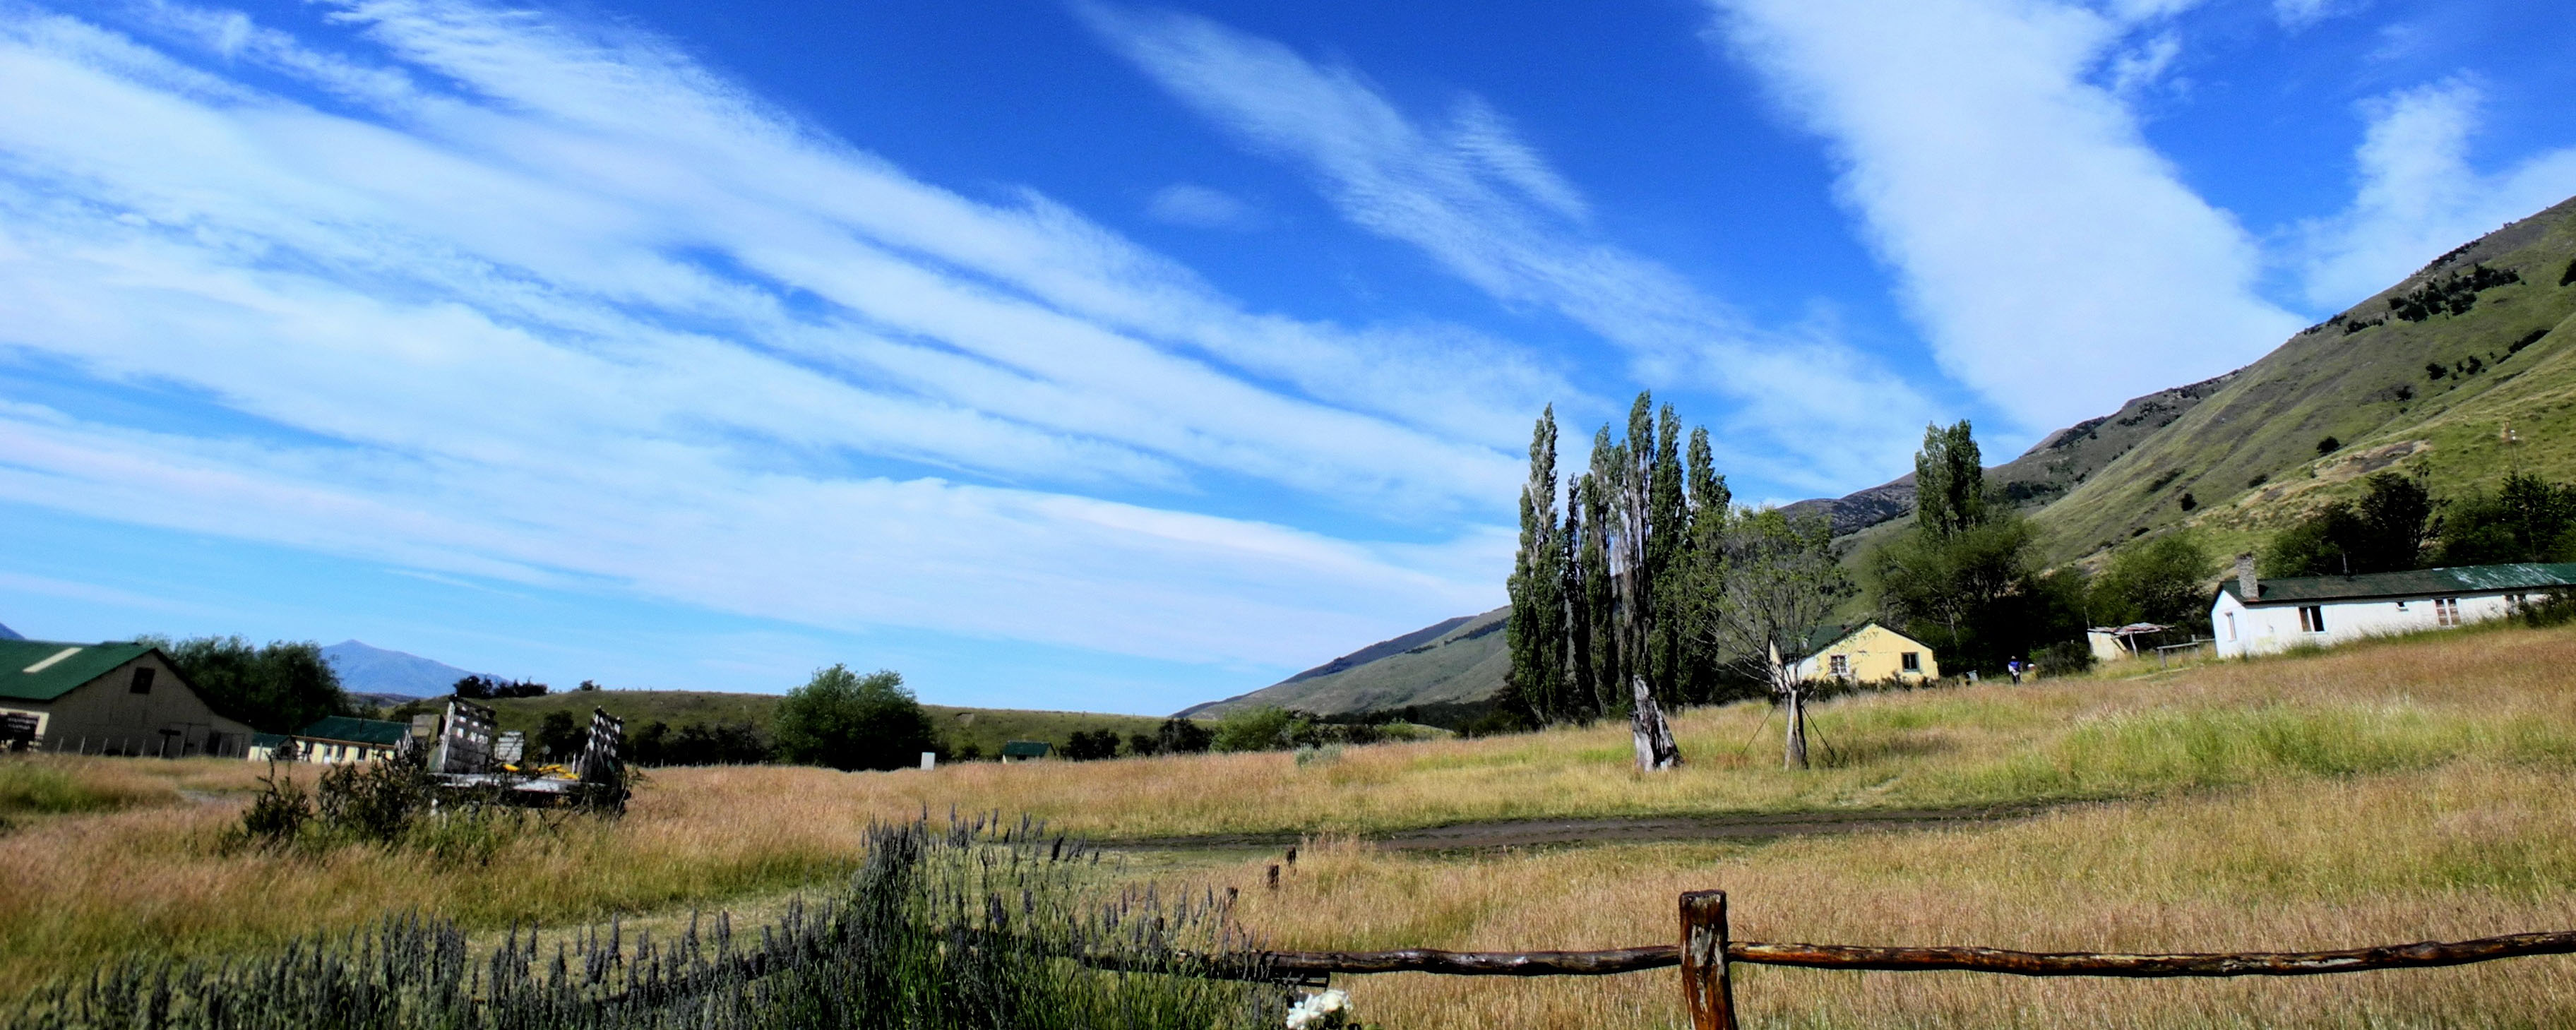 パタゴニアの大草原パンパに宿泊 -観光牧場(エスタンシア) | 南米アルゼンチンの専門旅行社 アンディーナトラベル